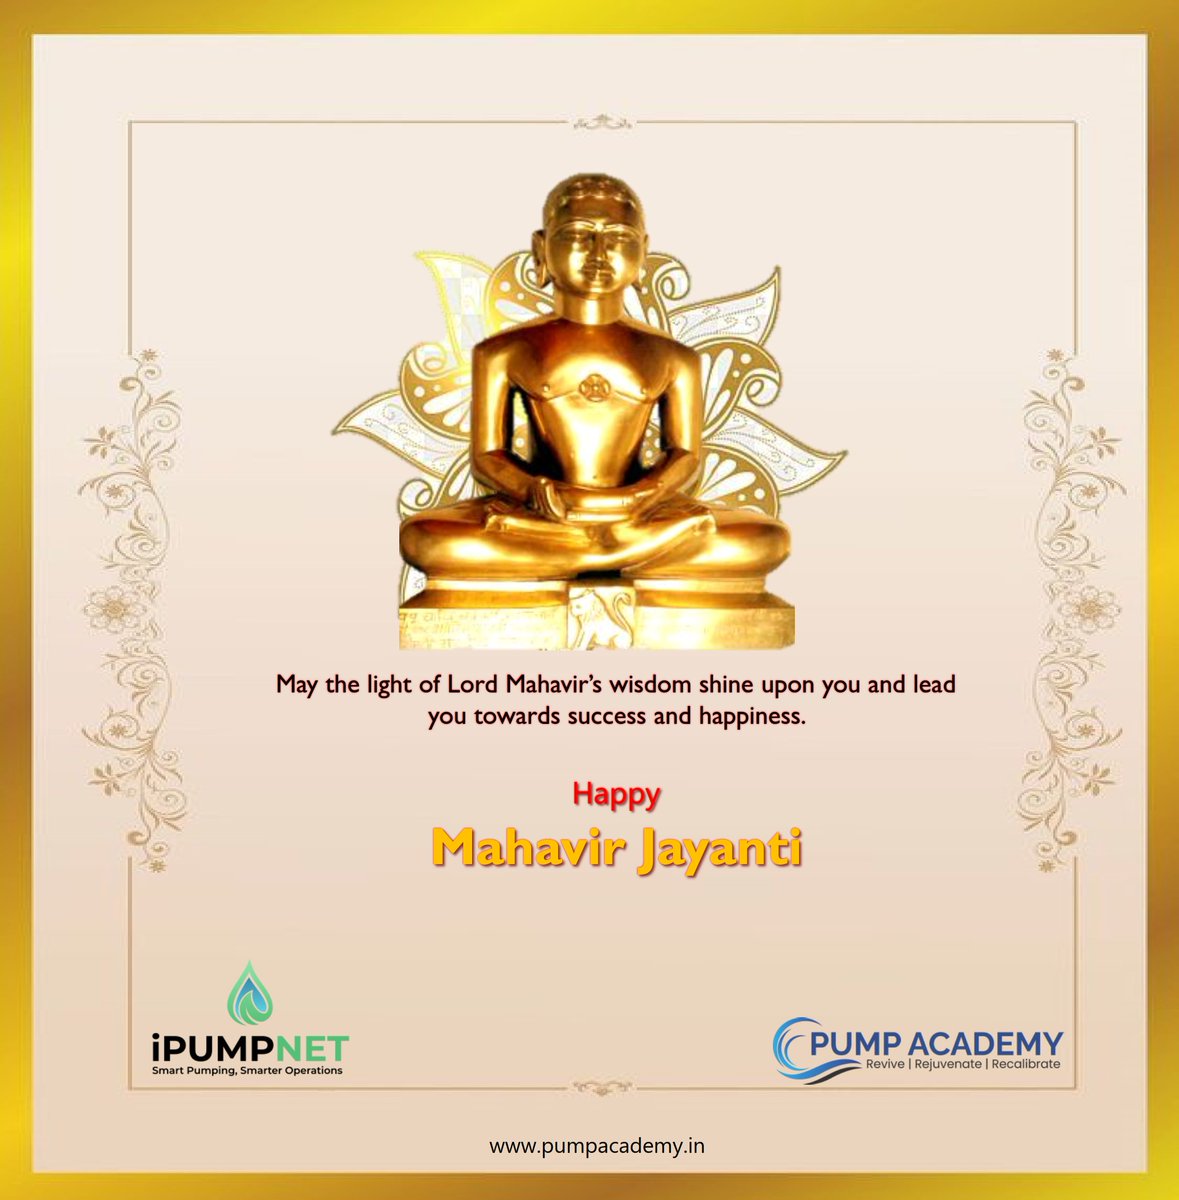 @PumpAcademy wishes you Happy Mahavir Jayanti!
#MahavirJayanti #MahavirJanmaKalyanak #ipumpnet #pumpacademy